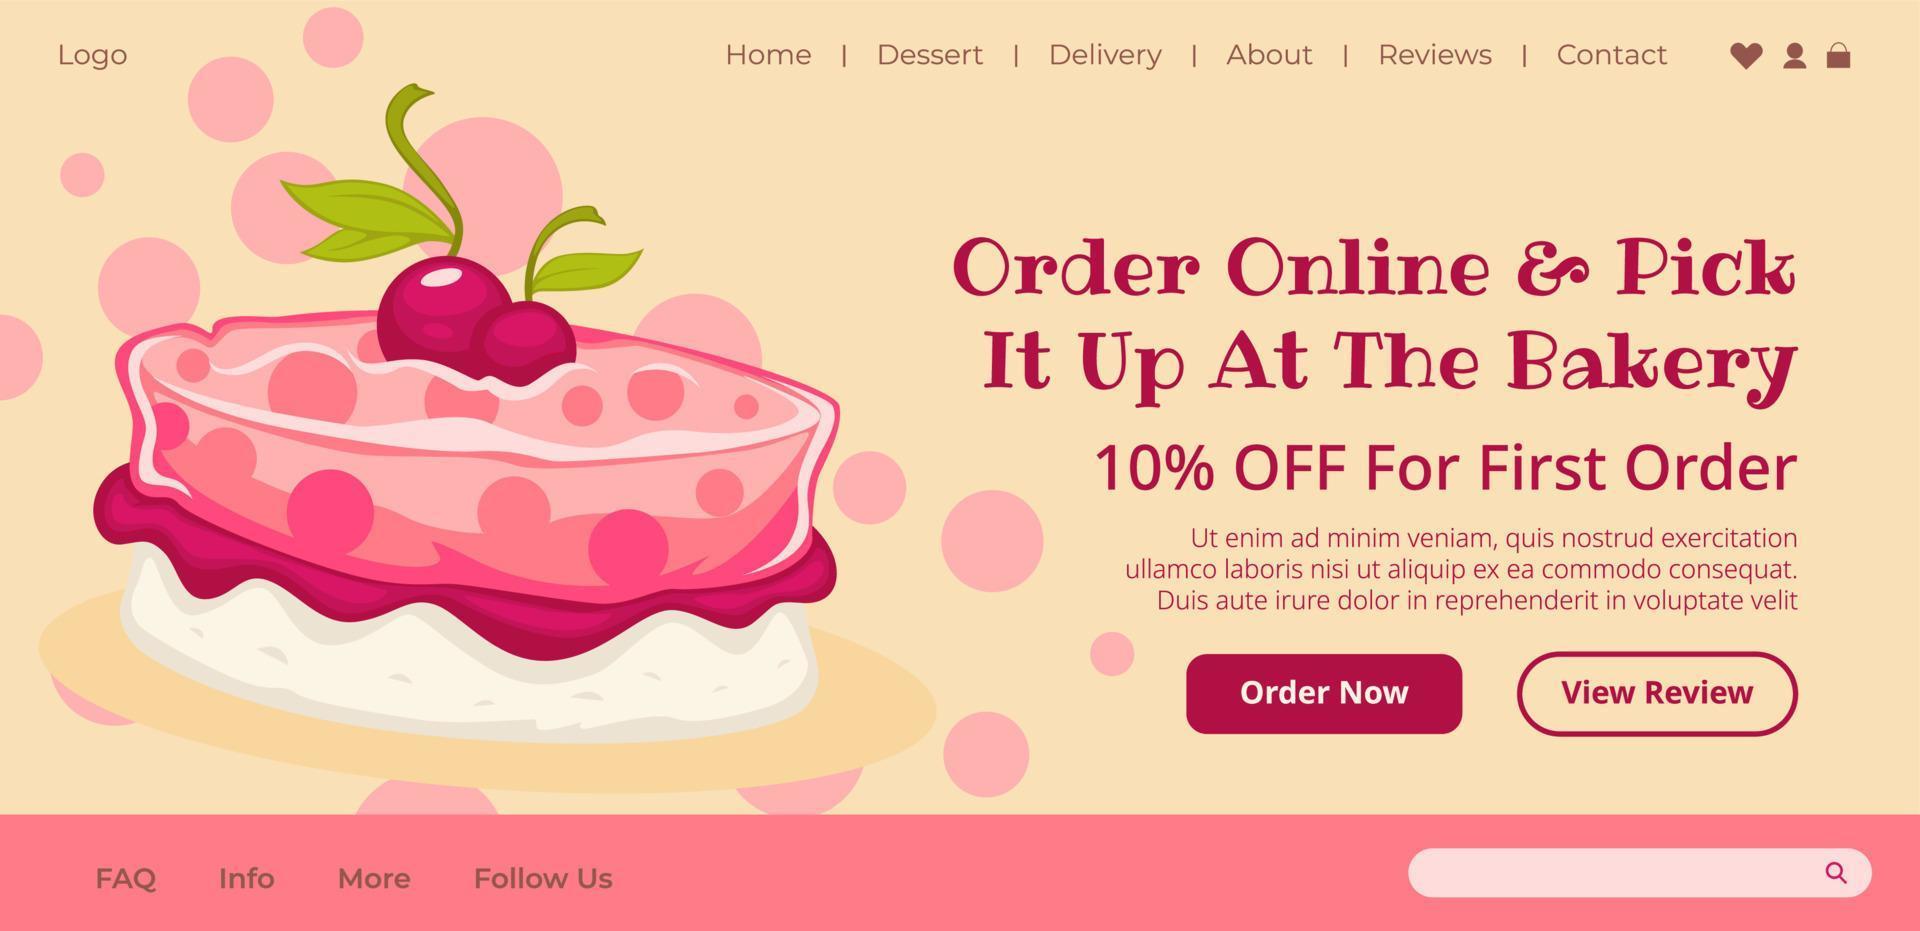 bestellen taart online en plukken het omhoog Bij bakkerij winkel vector